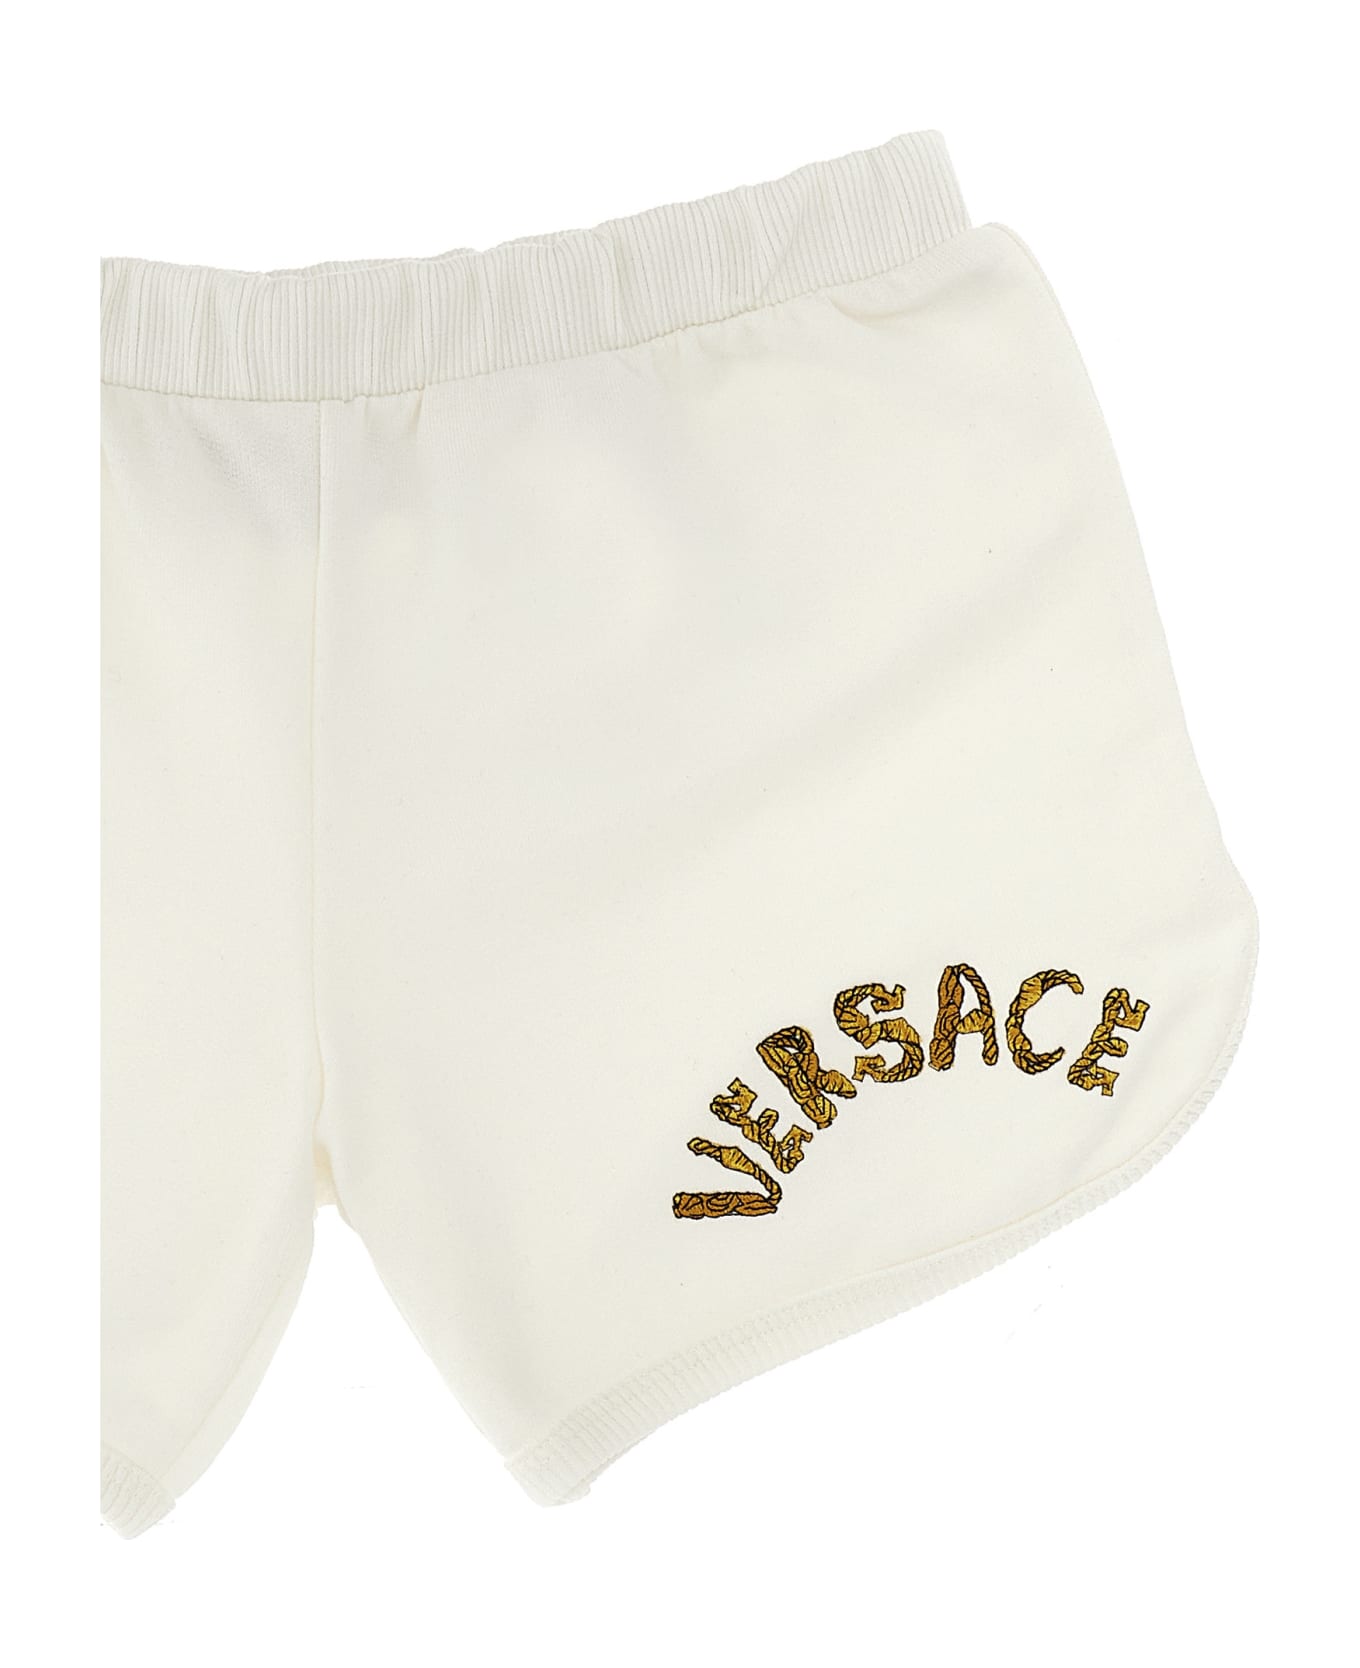 Versace La Vacanza Logo Embroidery Capsule Shorts - White